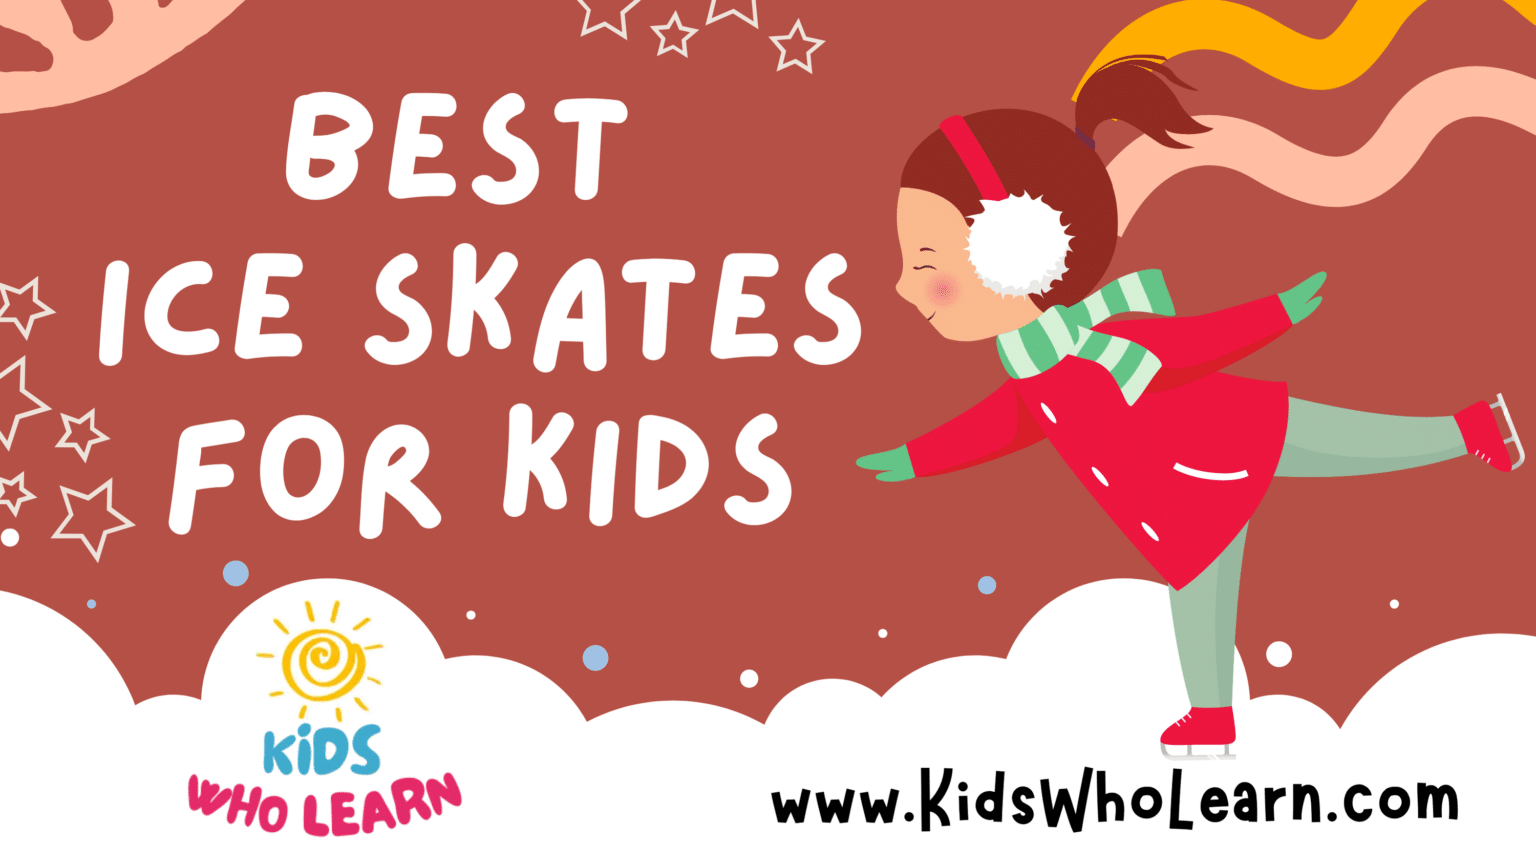 Best Ice Skates For Kids